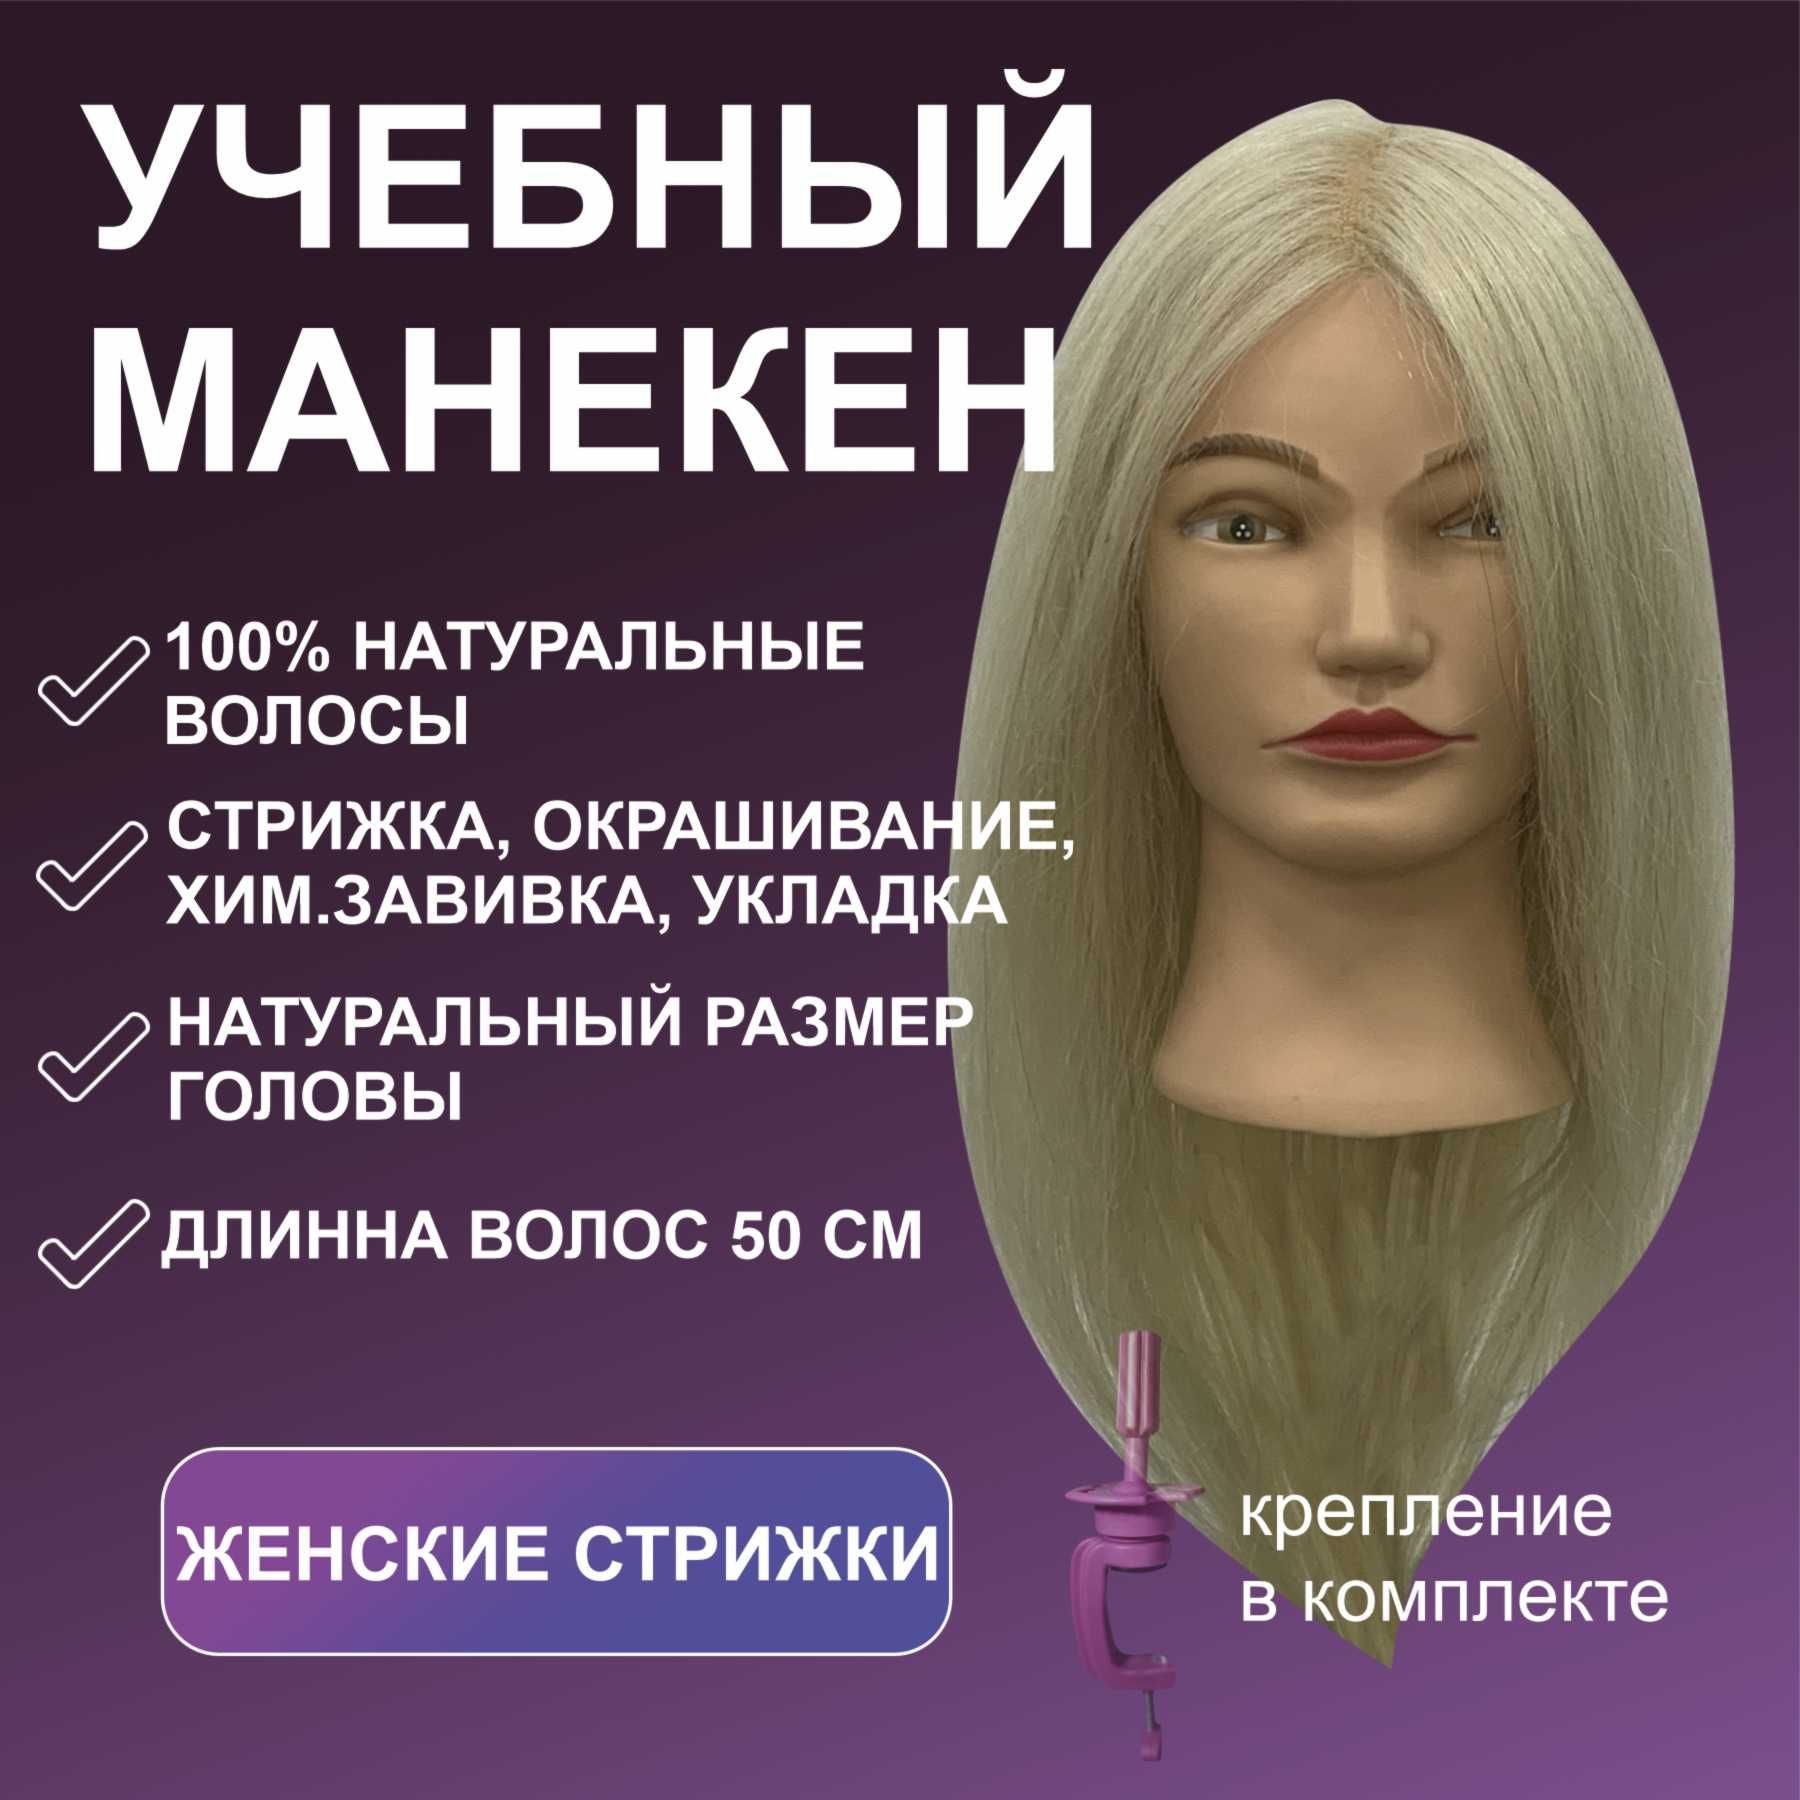 Как сделать манекен своими руками. Мастер-класс по изготовлению манекена :: taimyr-expo.ru